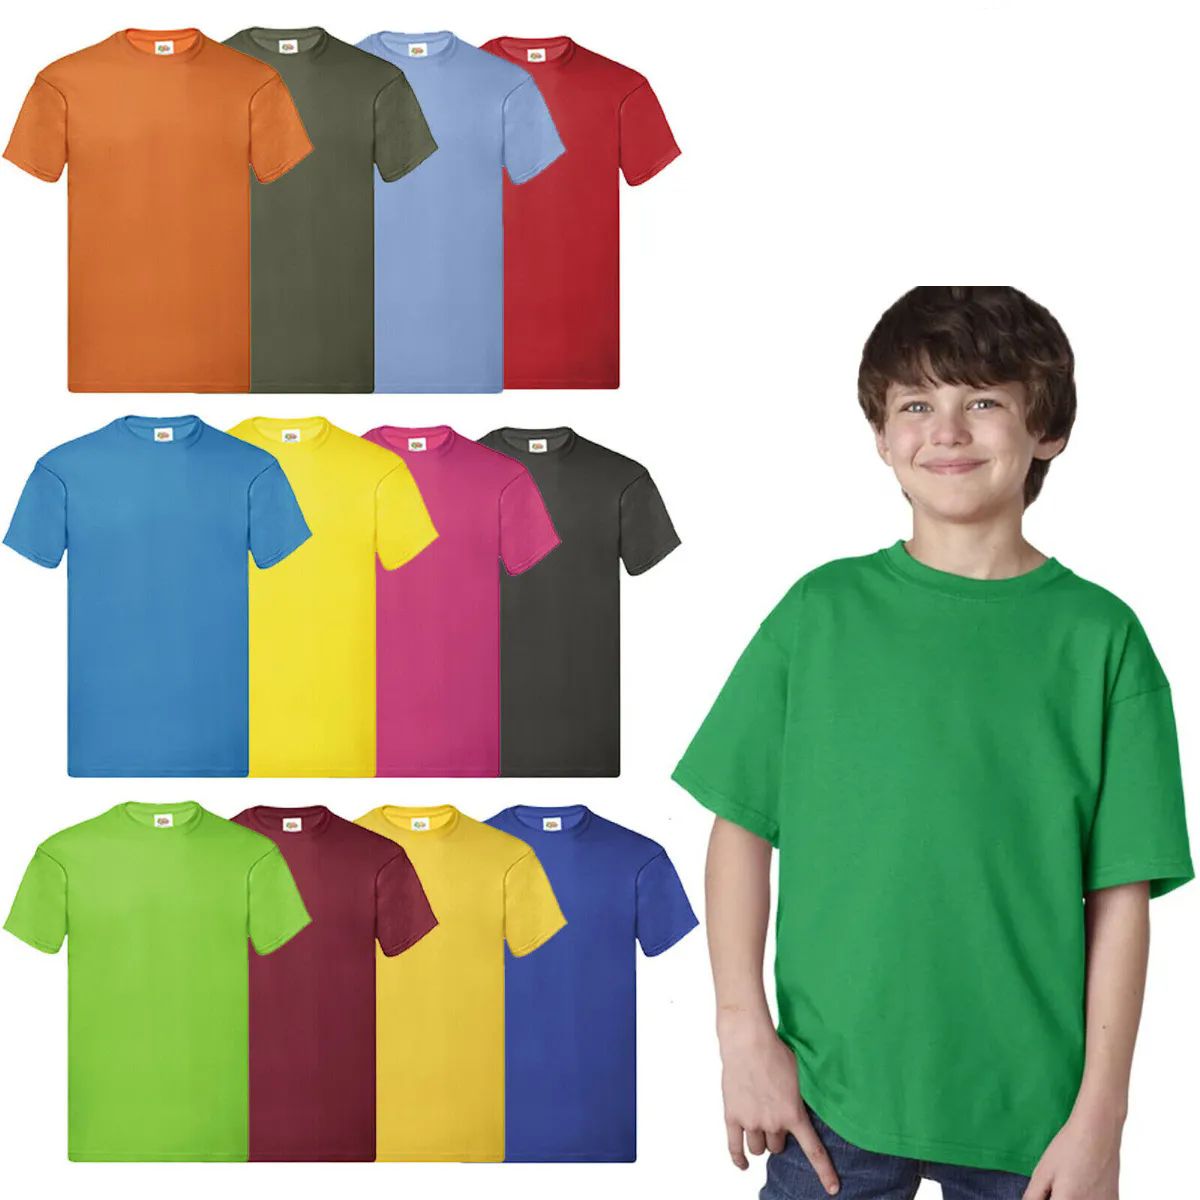 72 Bulk Billion Hats Kids Youth Cotton Assorted Colors T Shirts Size L